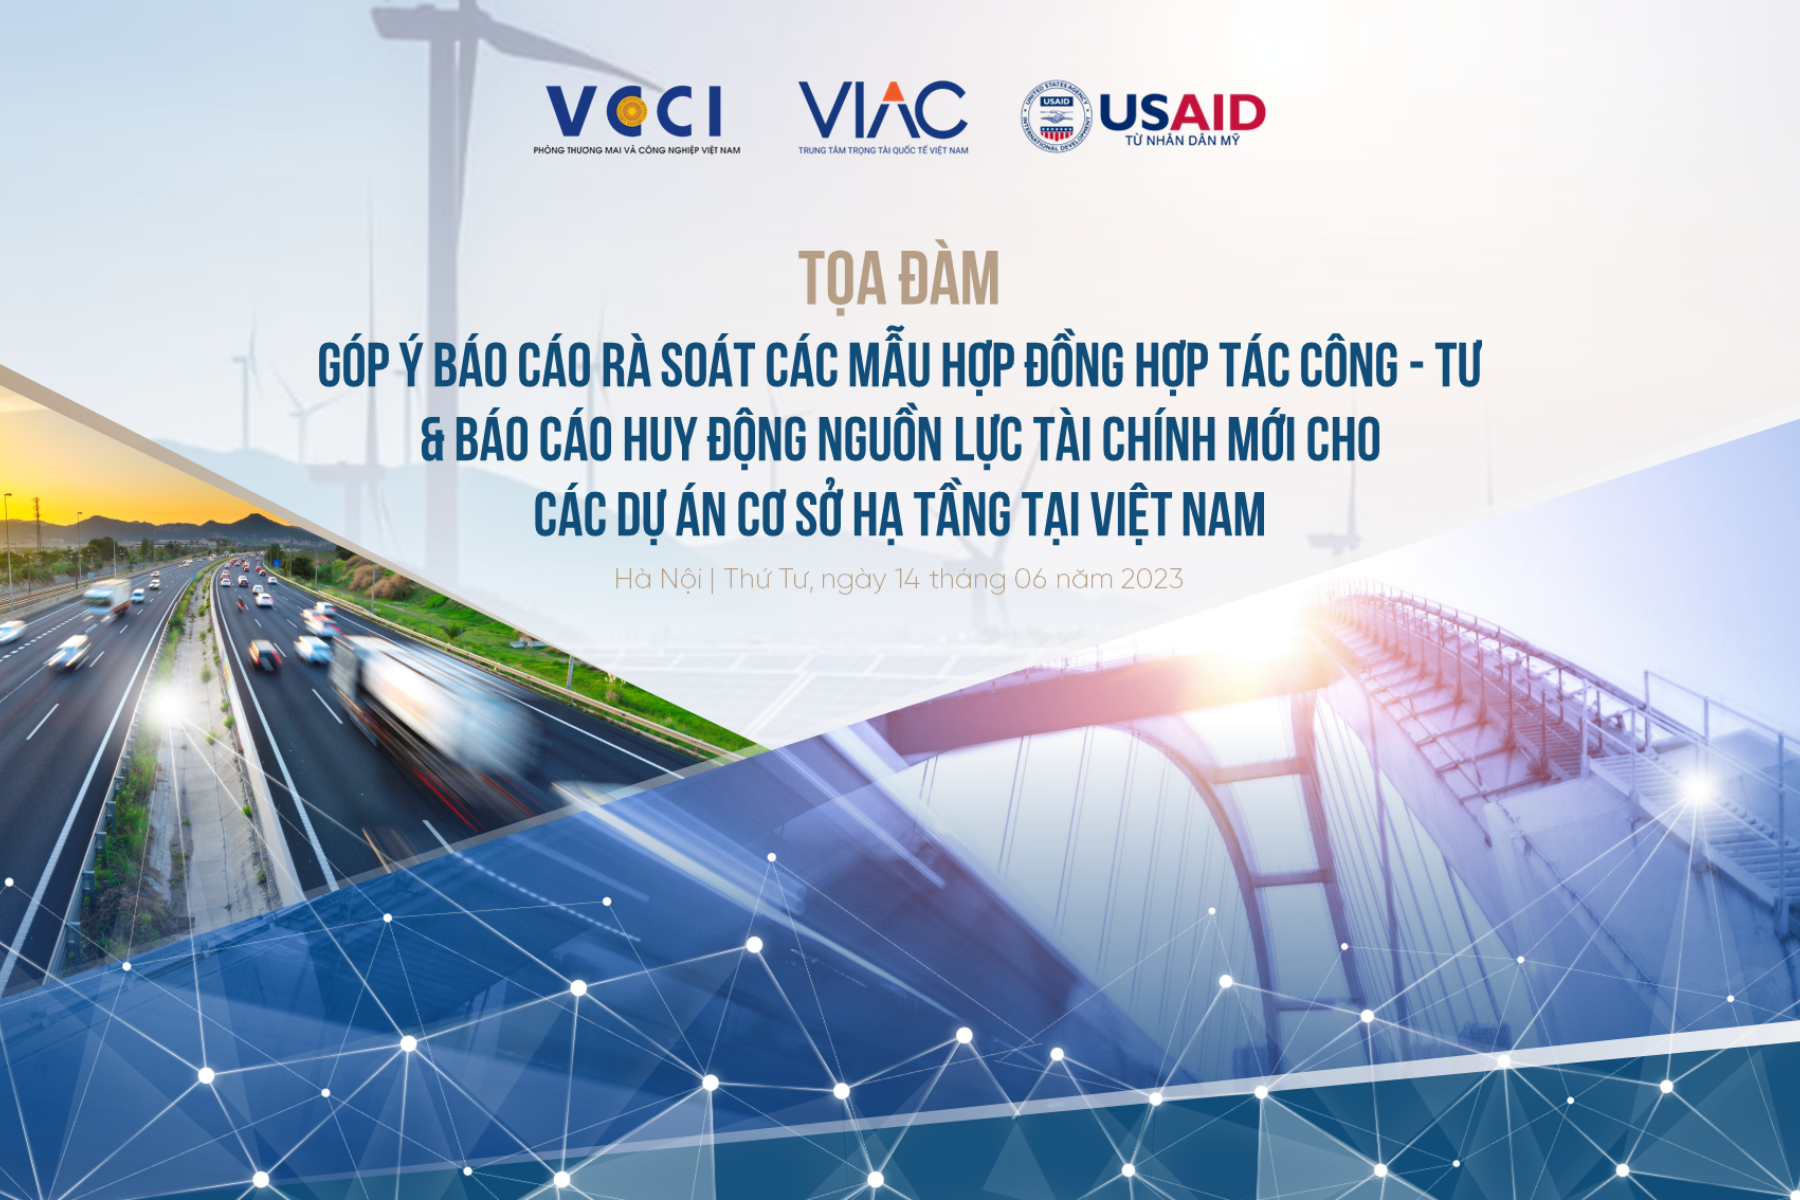 Tọa đàm góp ý báo cáo rà soát các mẫu hợp đồng hợp tác công - tư và báo cáo huy động nguồn lực tài chính mới cho các dự án cơ sở hạ tầng tại Việt Nam